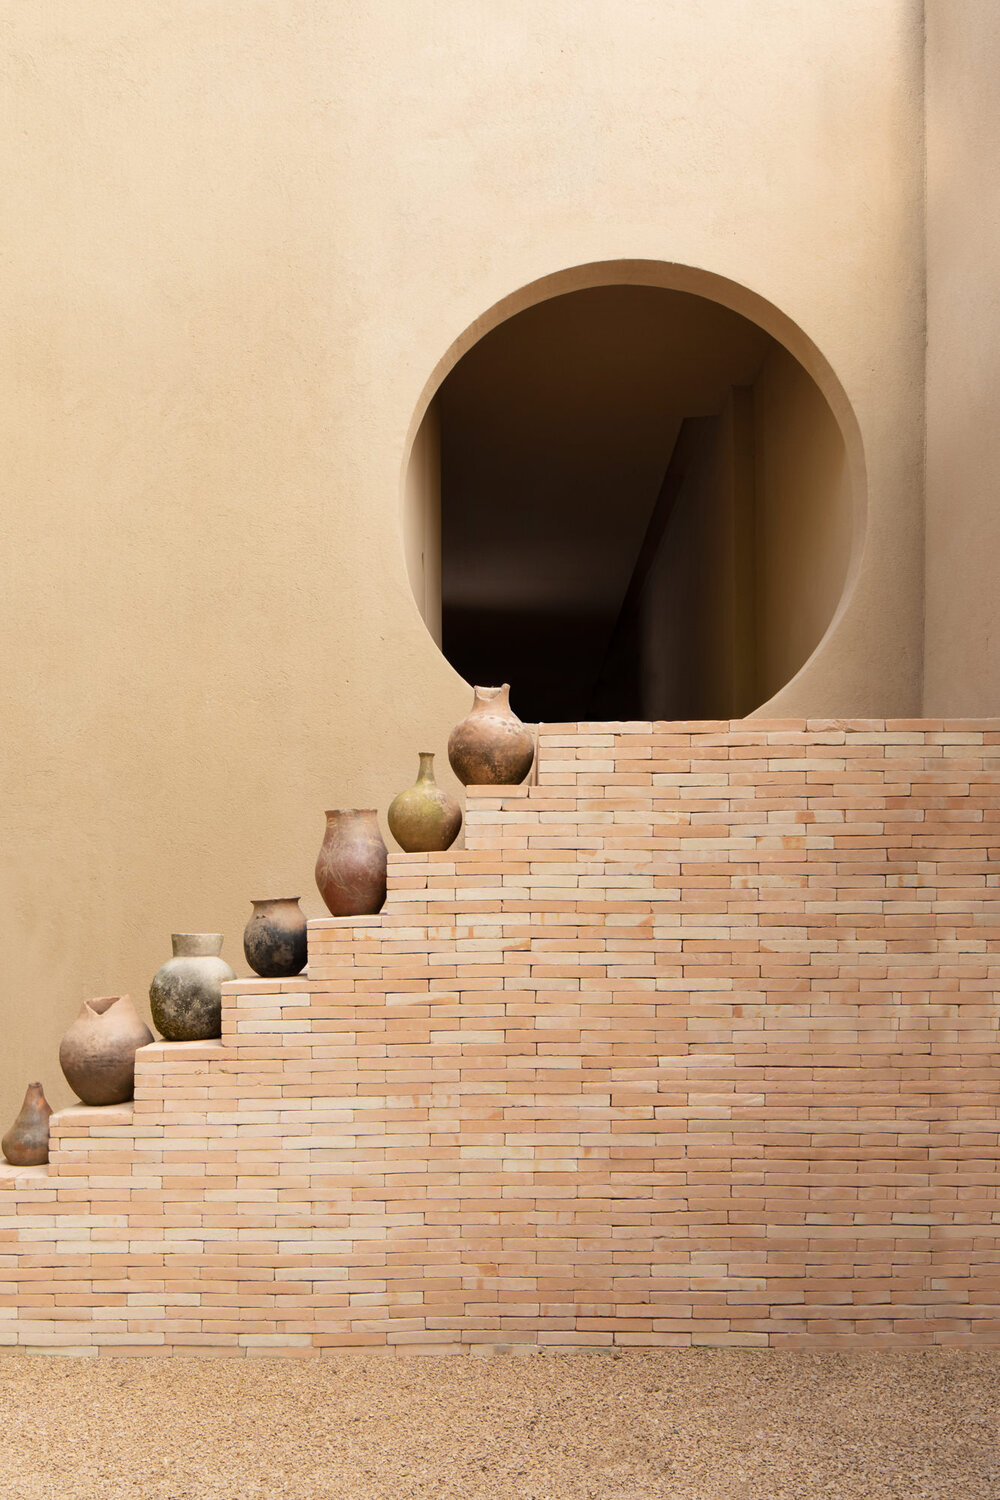 ilaria fatone - escalier en brique et vases en terracotta